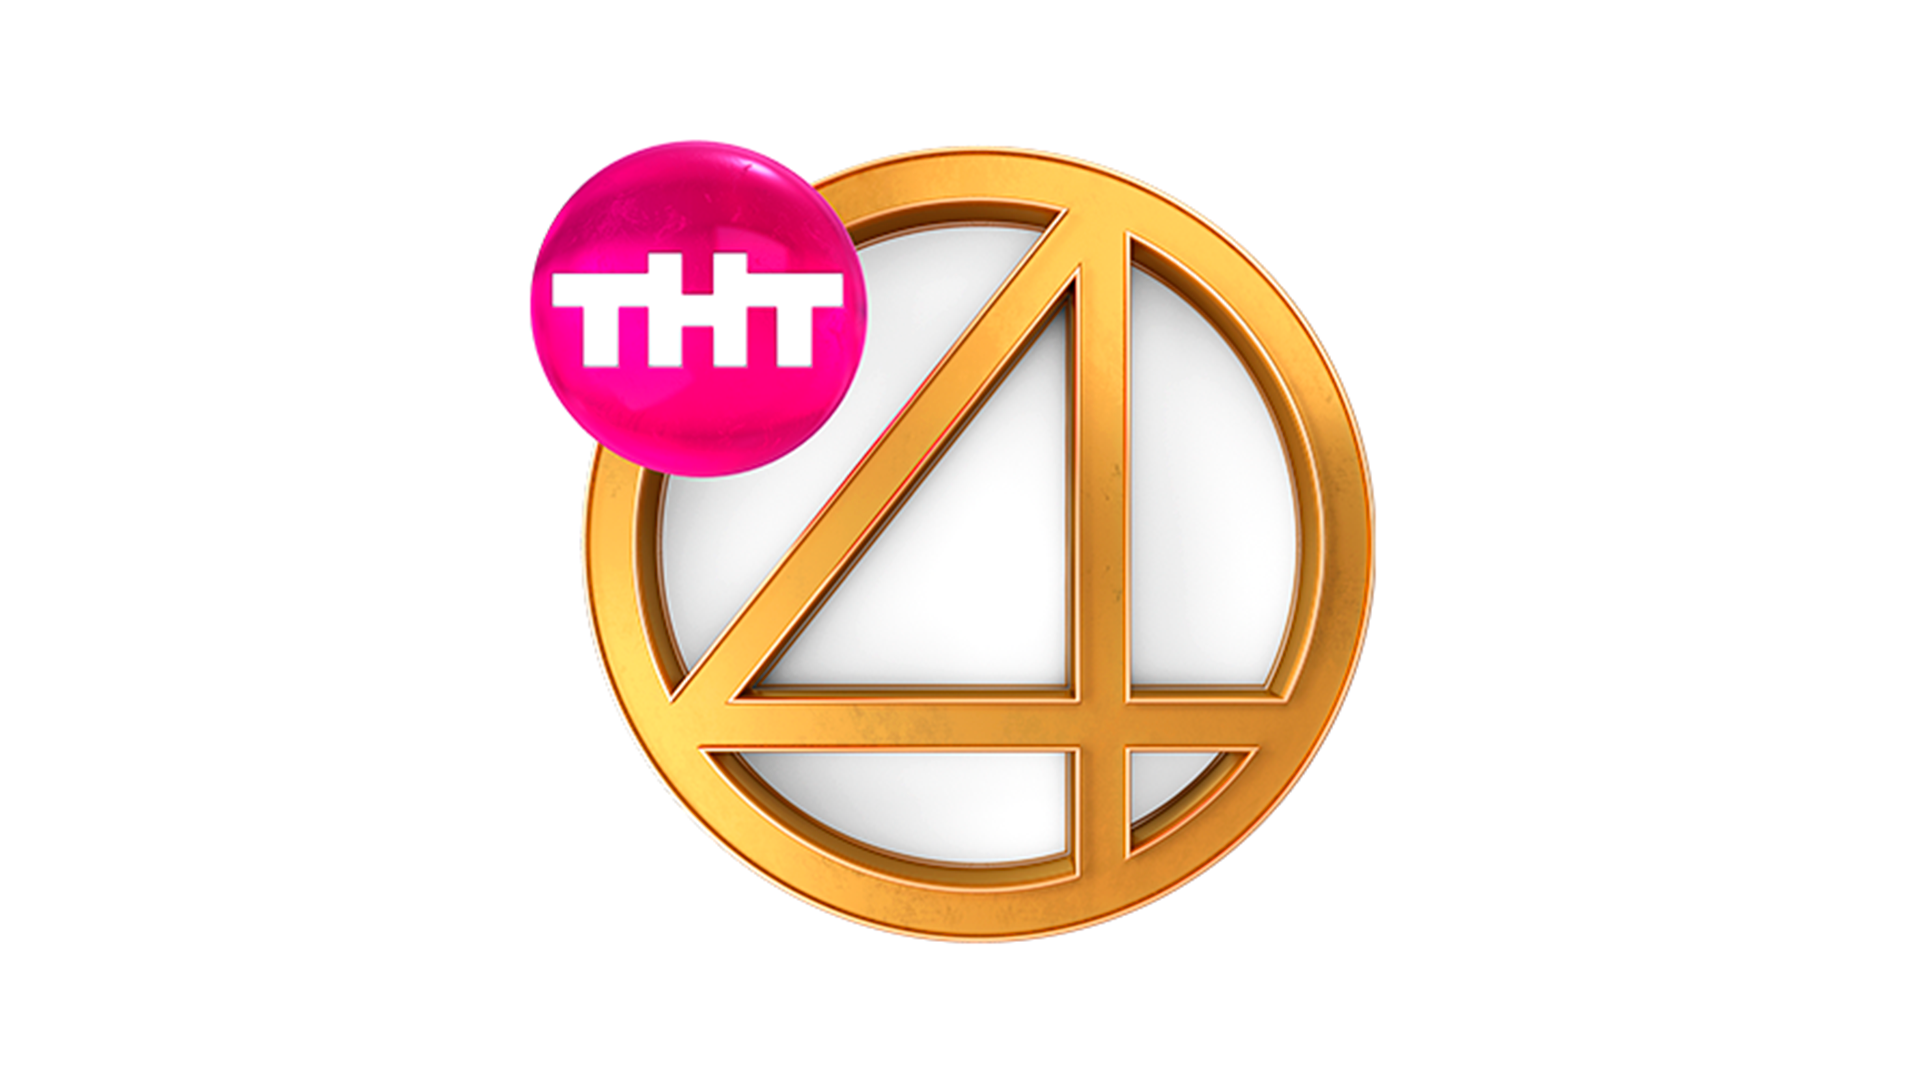 Канал 4 канала четыре канала четыре. Телеканал ТНТ 4 новый логотип. Четвёртый канал эмблема телеканала ТНТ 4. Логотип тнт4 2017-н.в. ТНТ 4 прямой эфир.